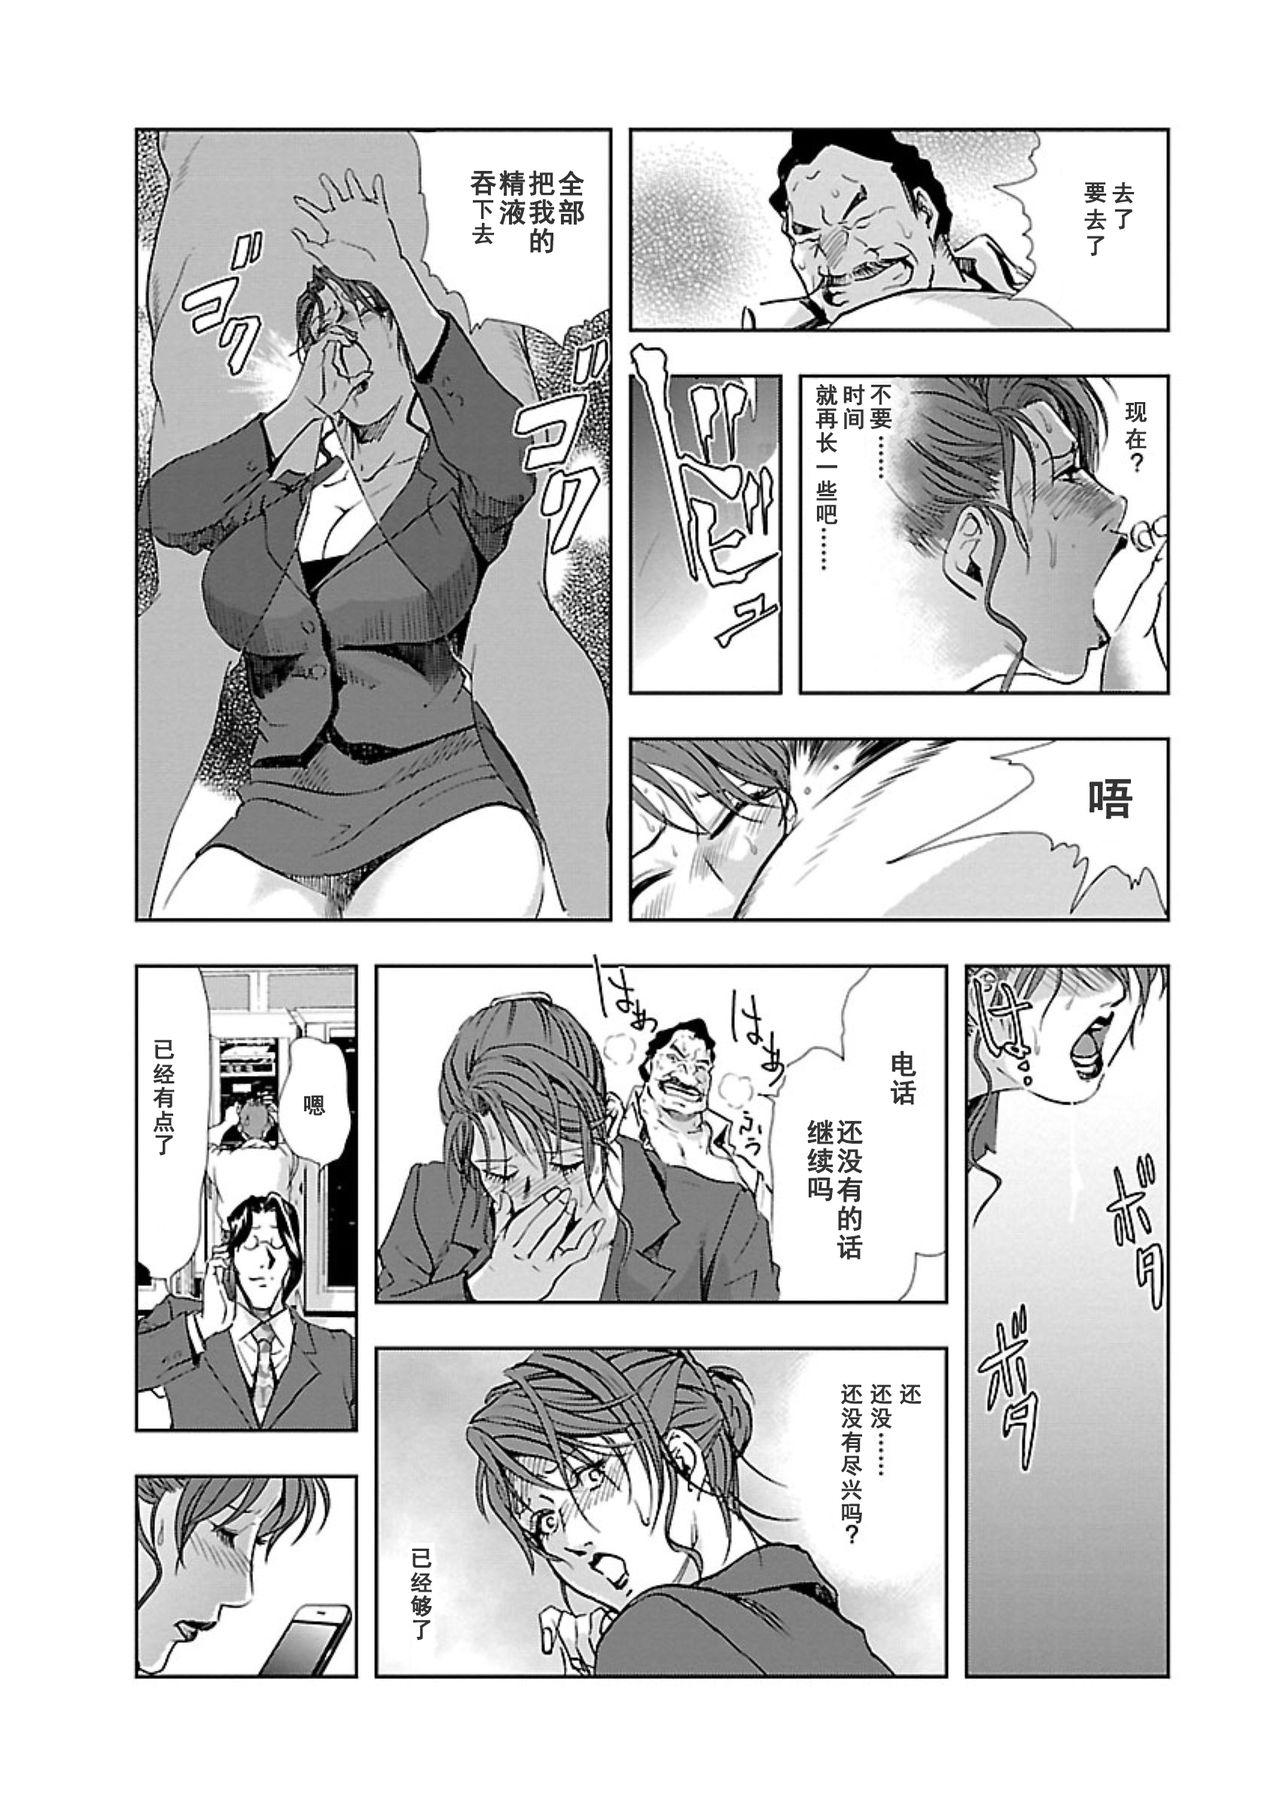 【不可视汉化】[Misaki Yukihiro] Nikuhisyo Yukiko chapter 04  [Digital] 17